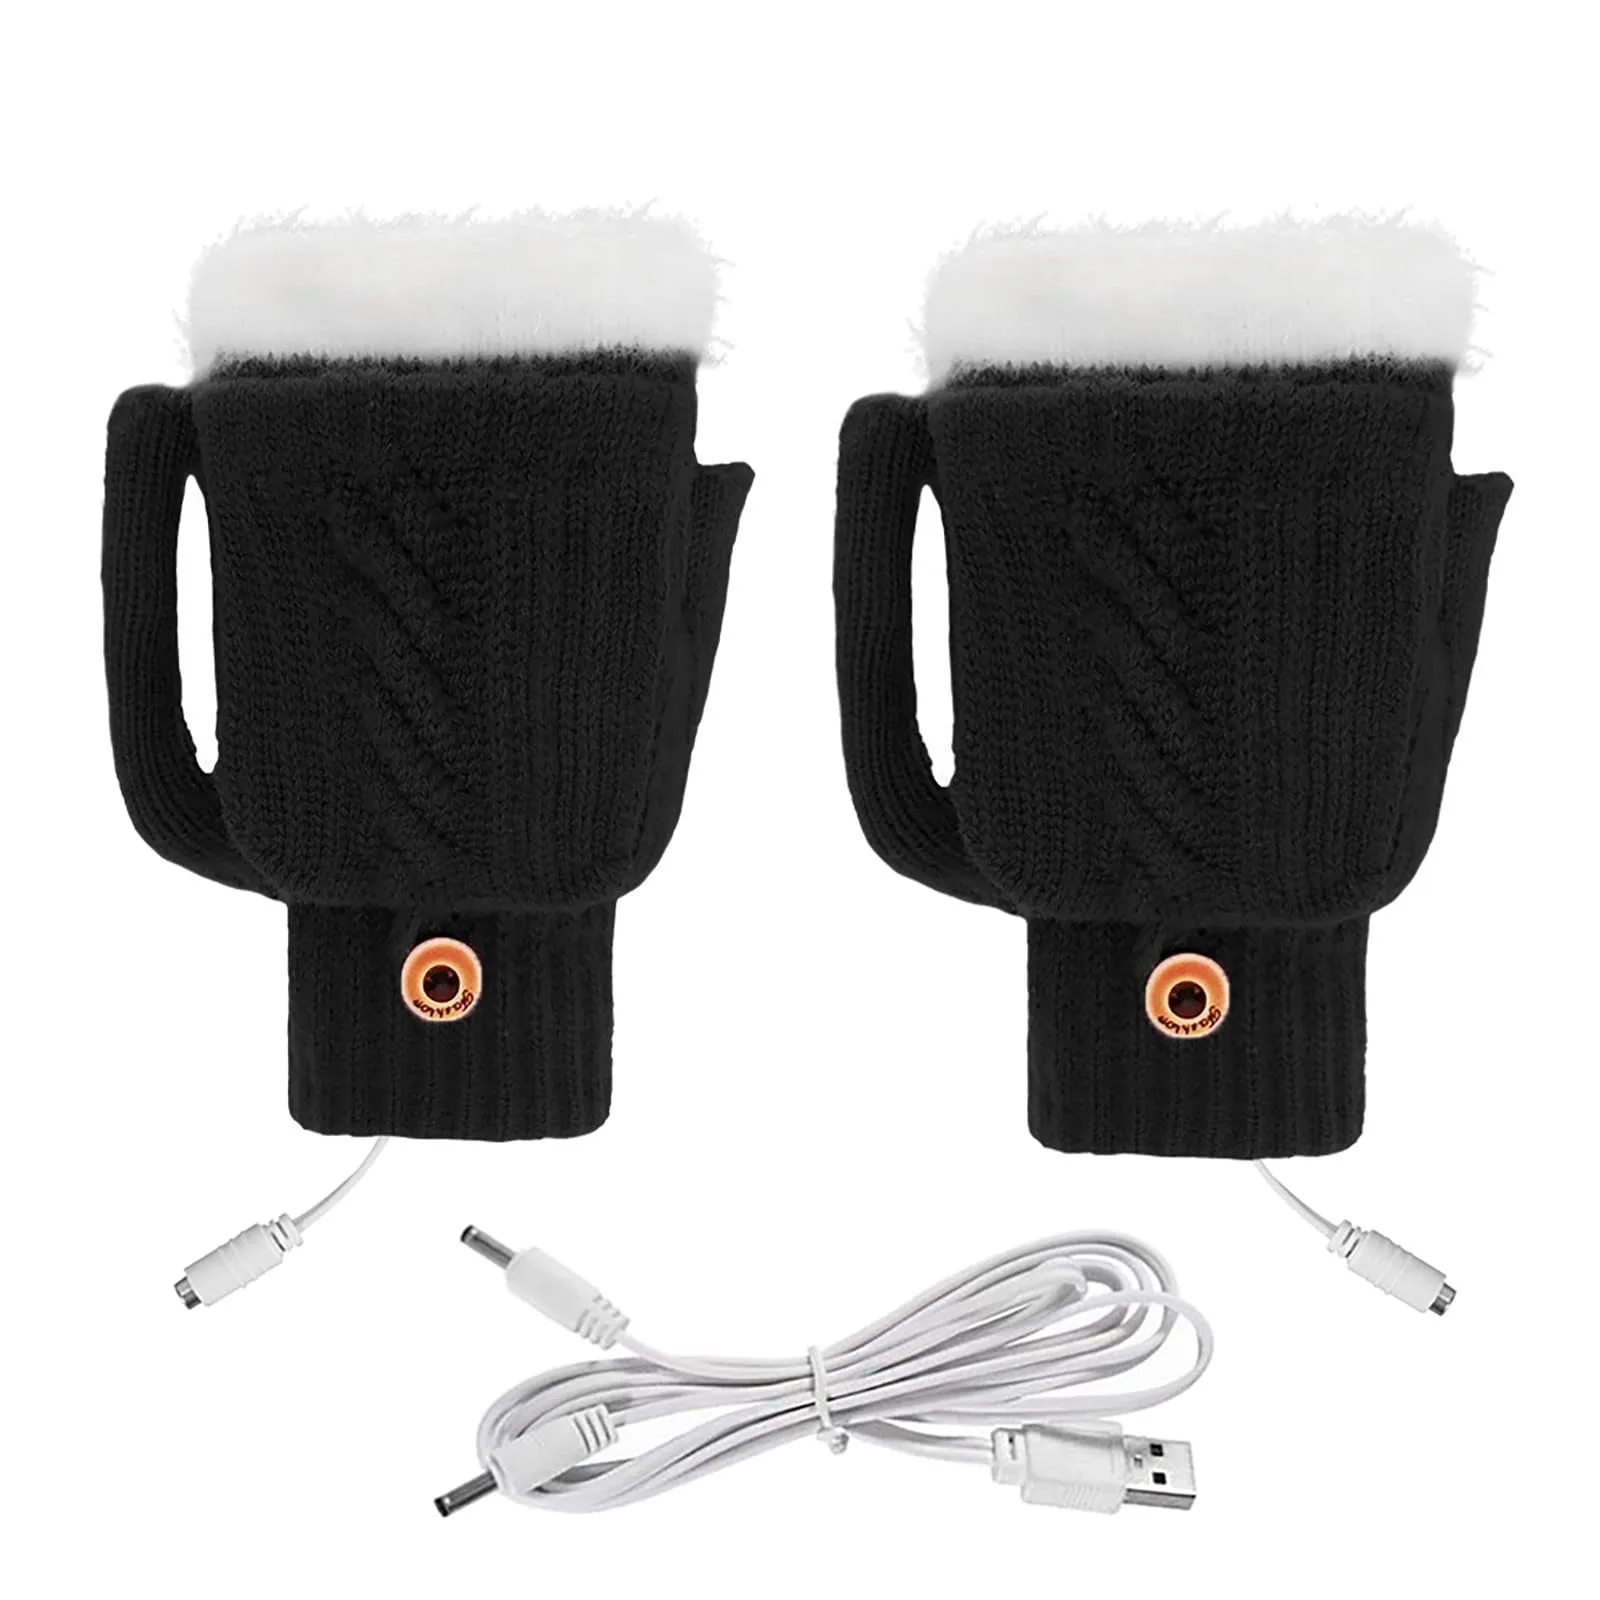 

Теплые зимние перчатки с электроподогревом, умные зимние перчатки с зарядкой от USB для катания на лыжах, холодной погоде, вождения, пешего туризма, удобные мягкие перчатки